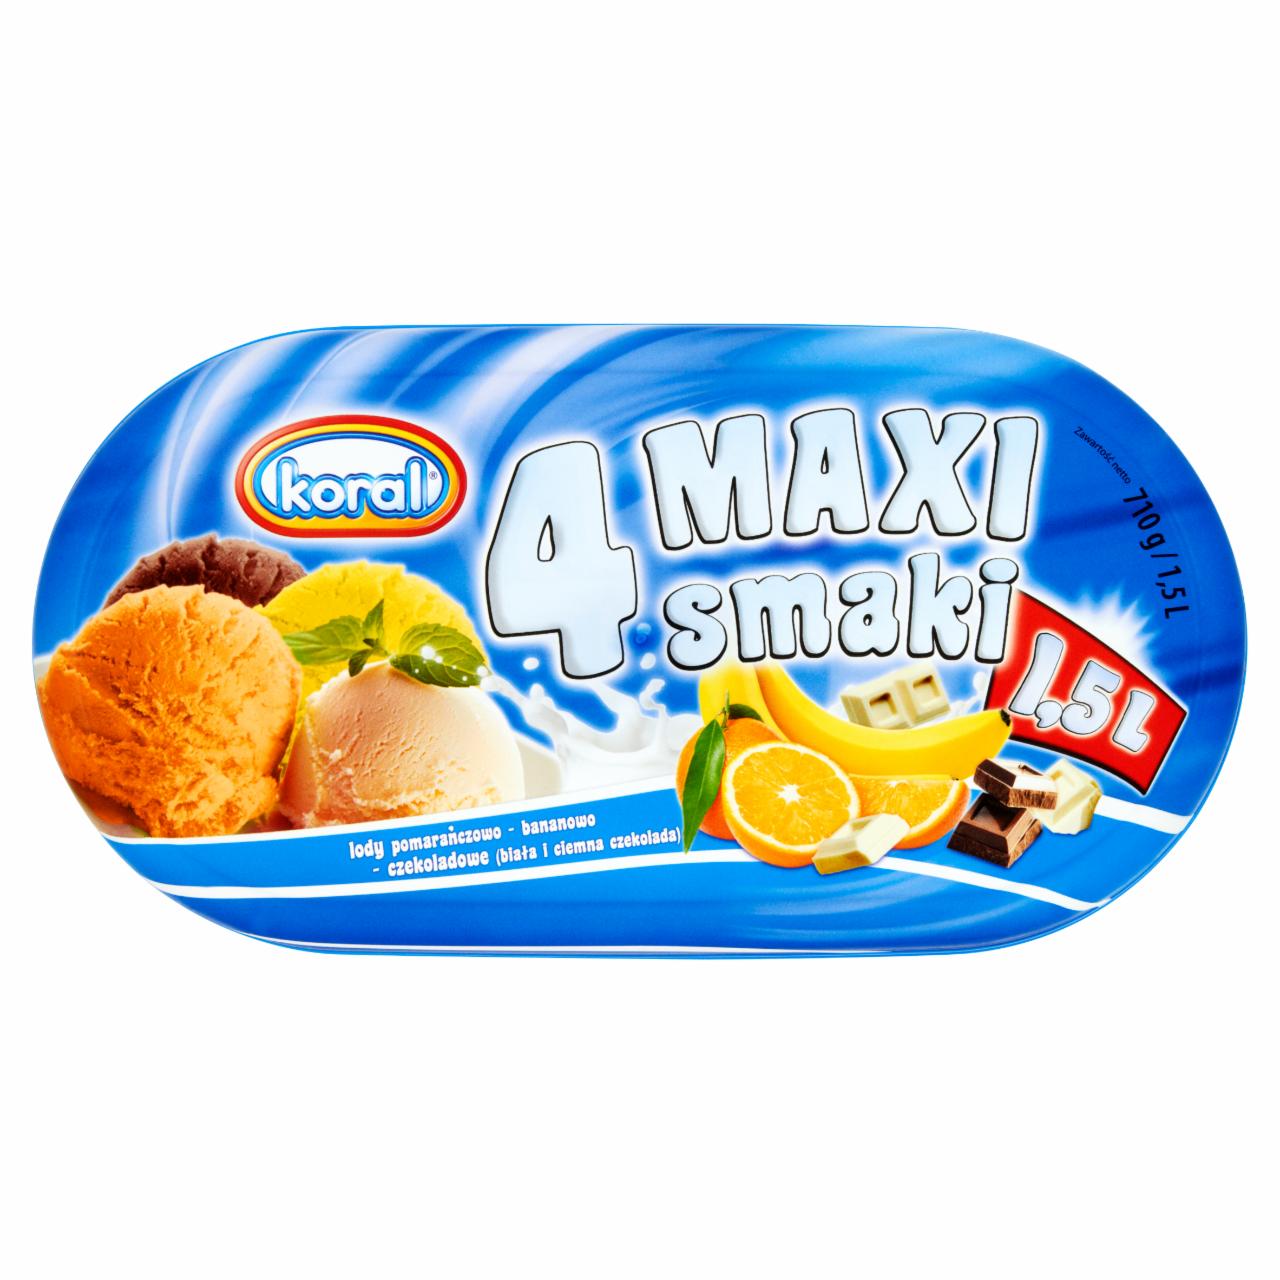 Zdjęcia - Koral 4 Maxi smaki Lody pomarańczowo-bananowo-czekoladowe (biała i ciemna czekolada) 1,5 l